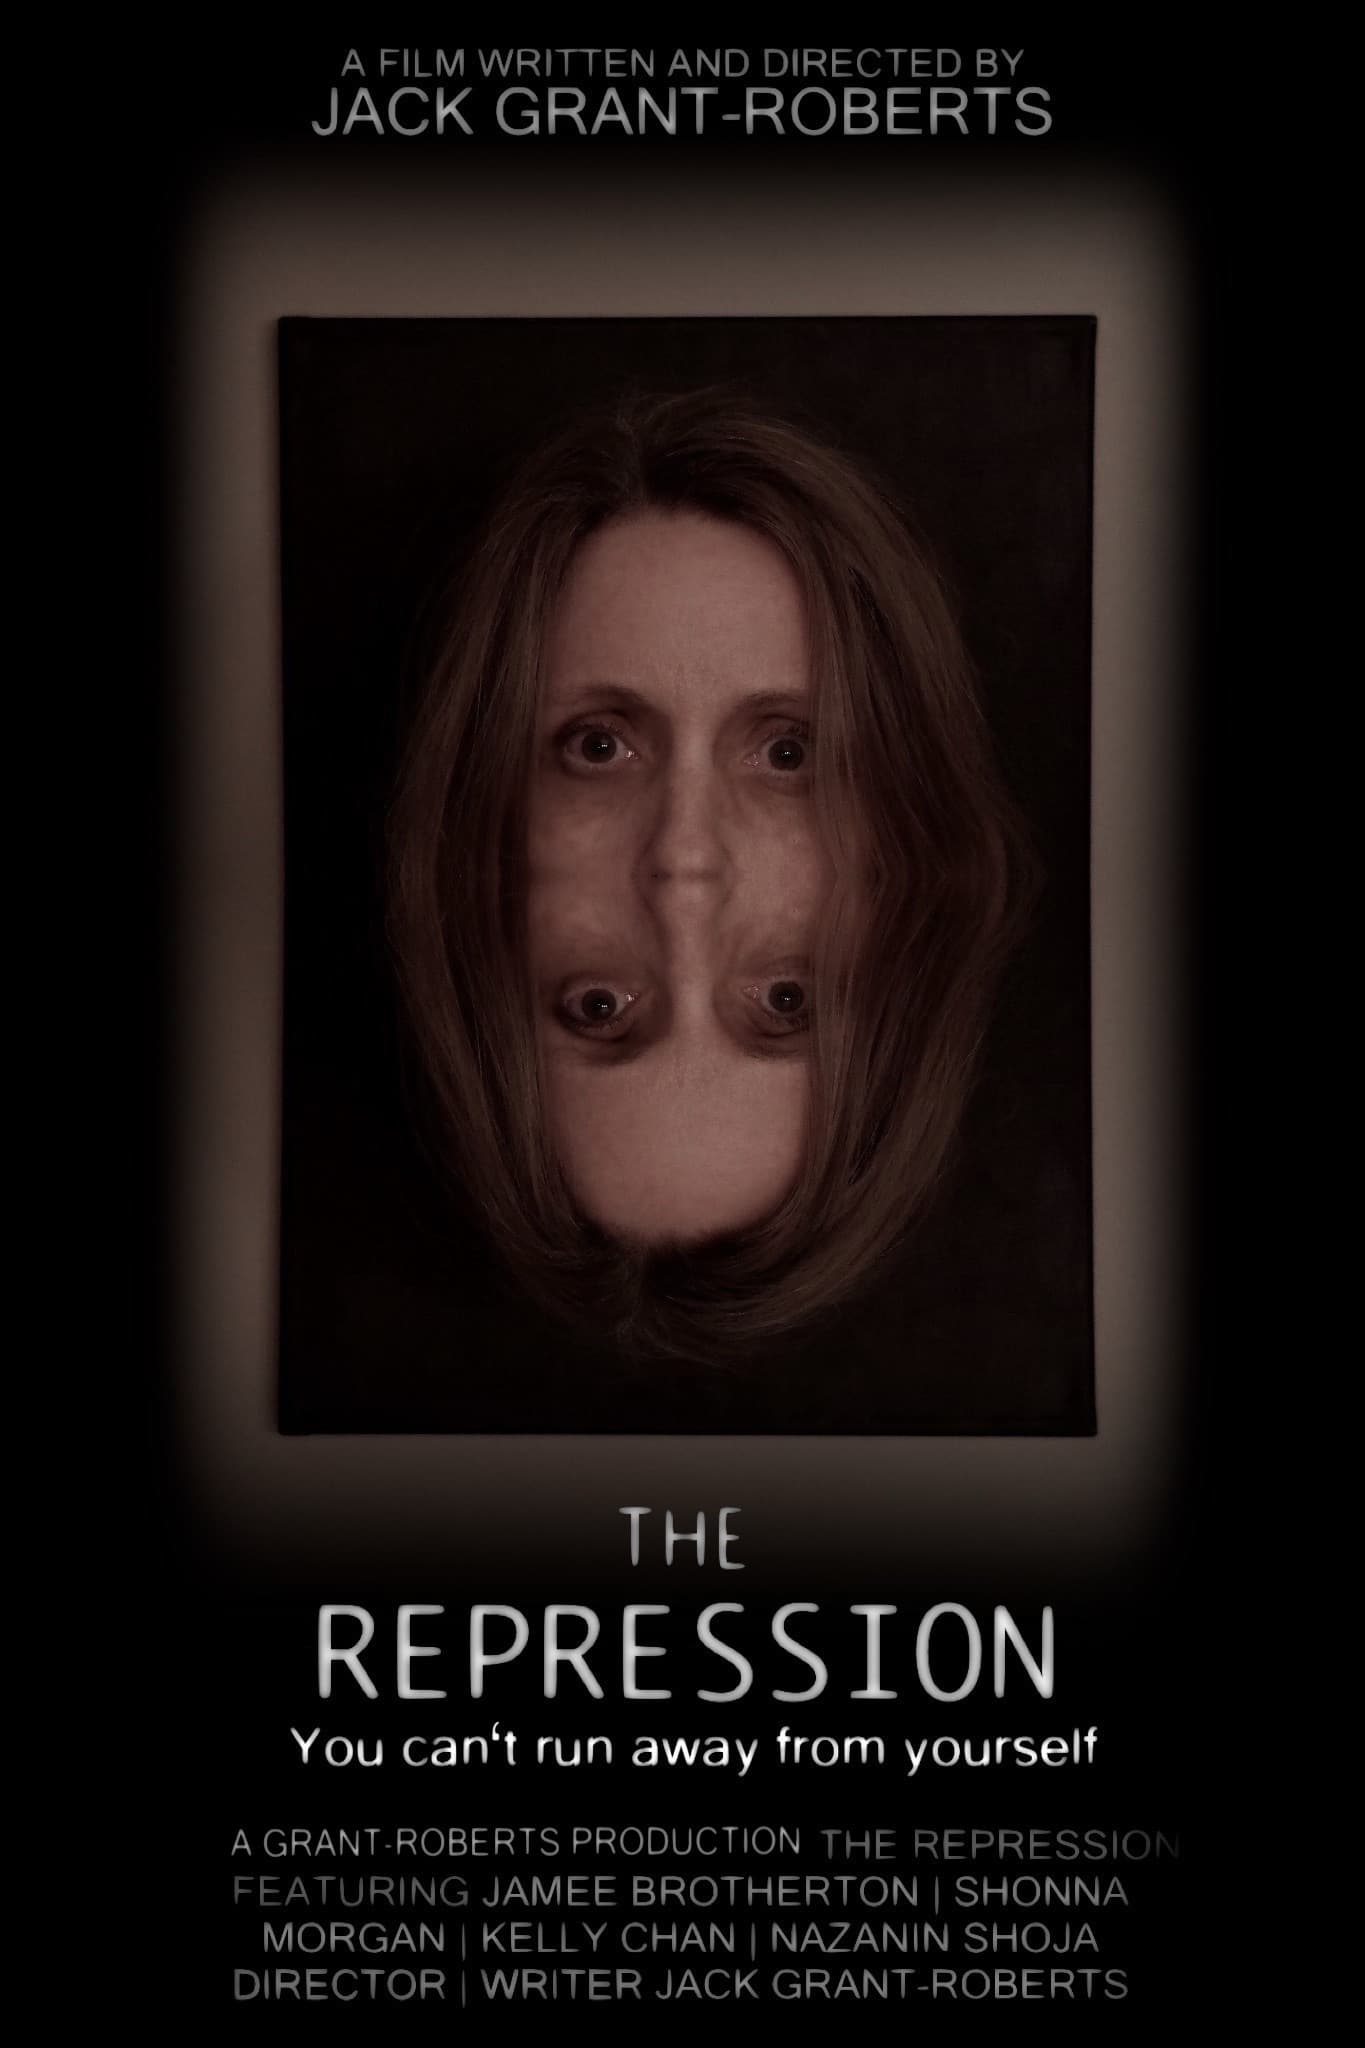 The Repression